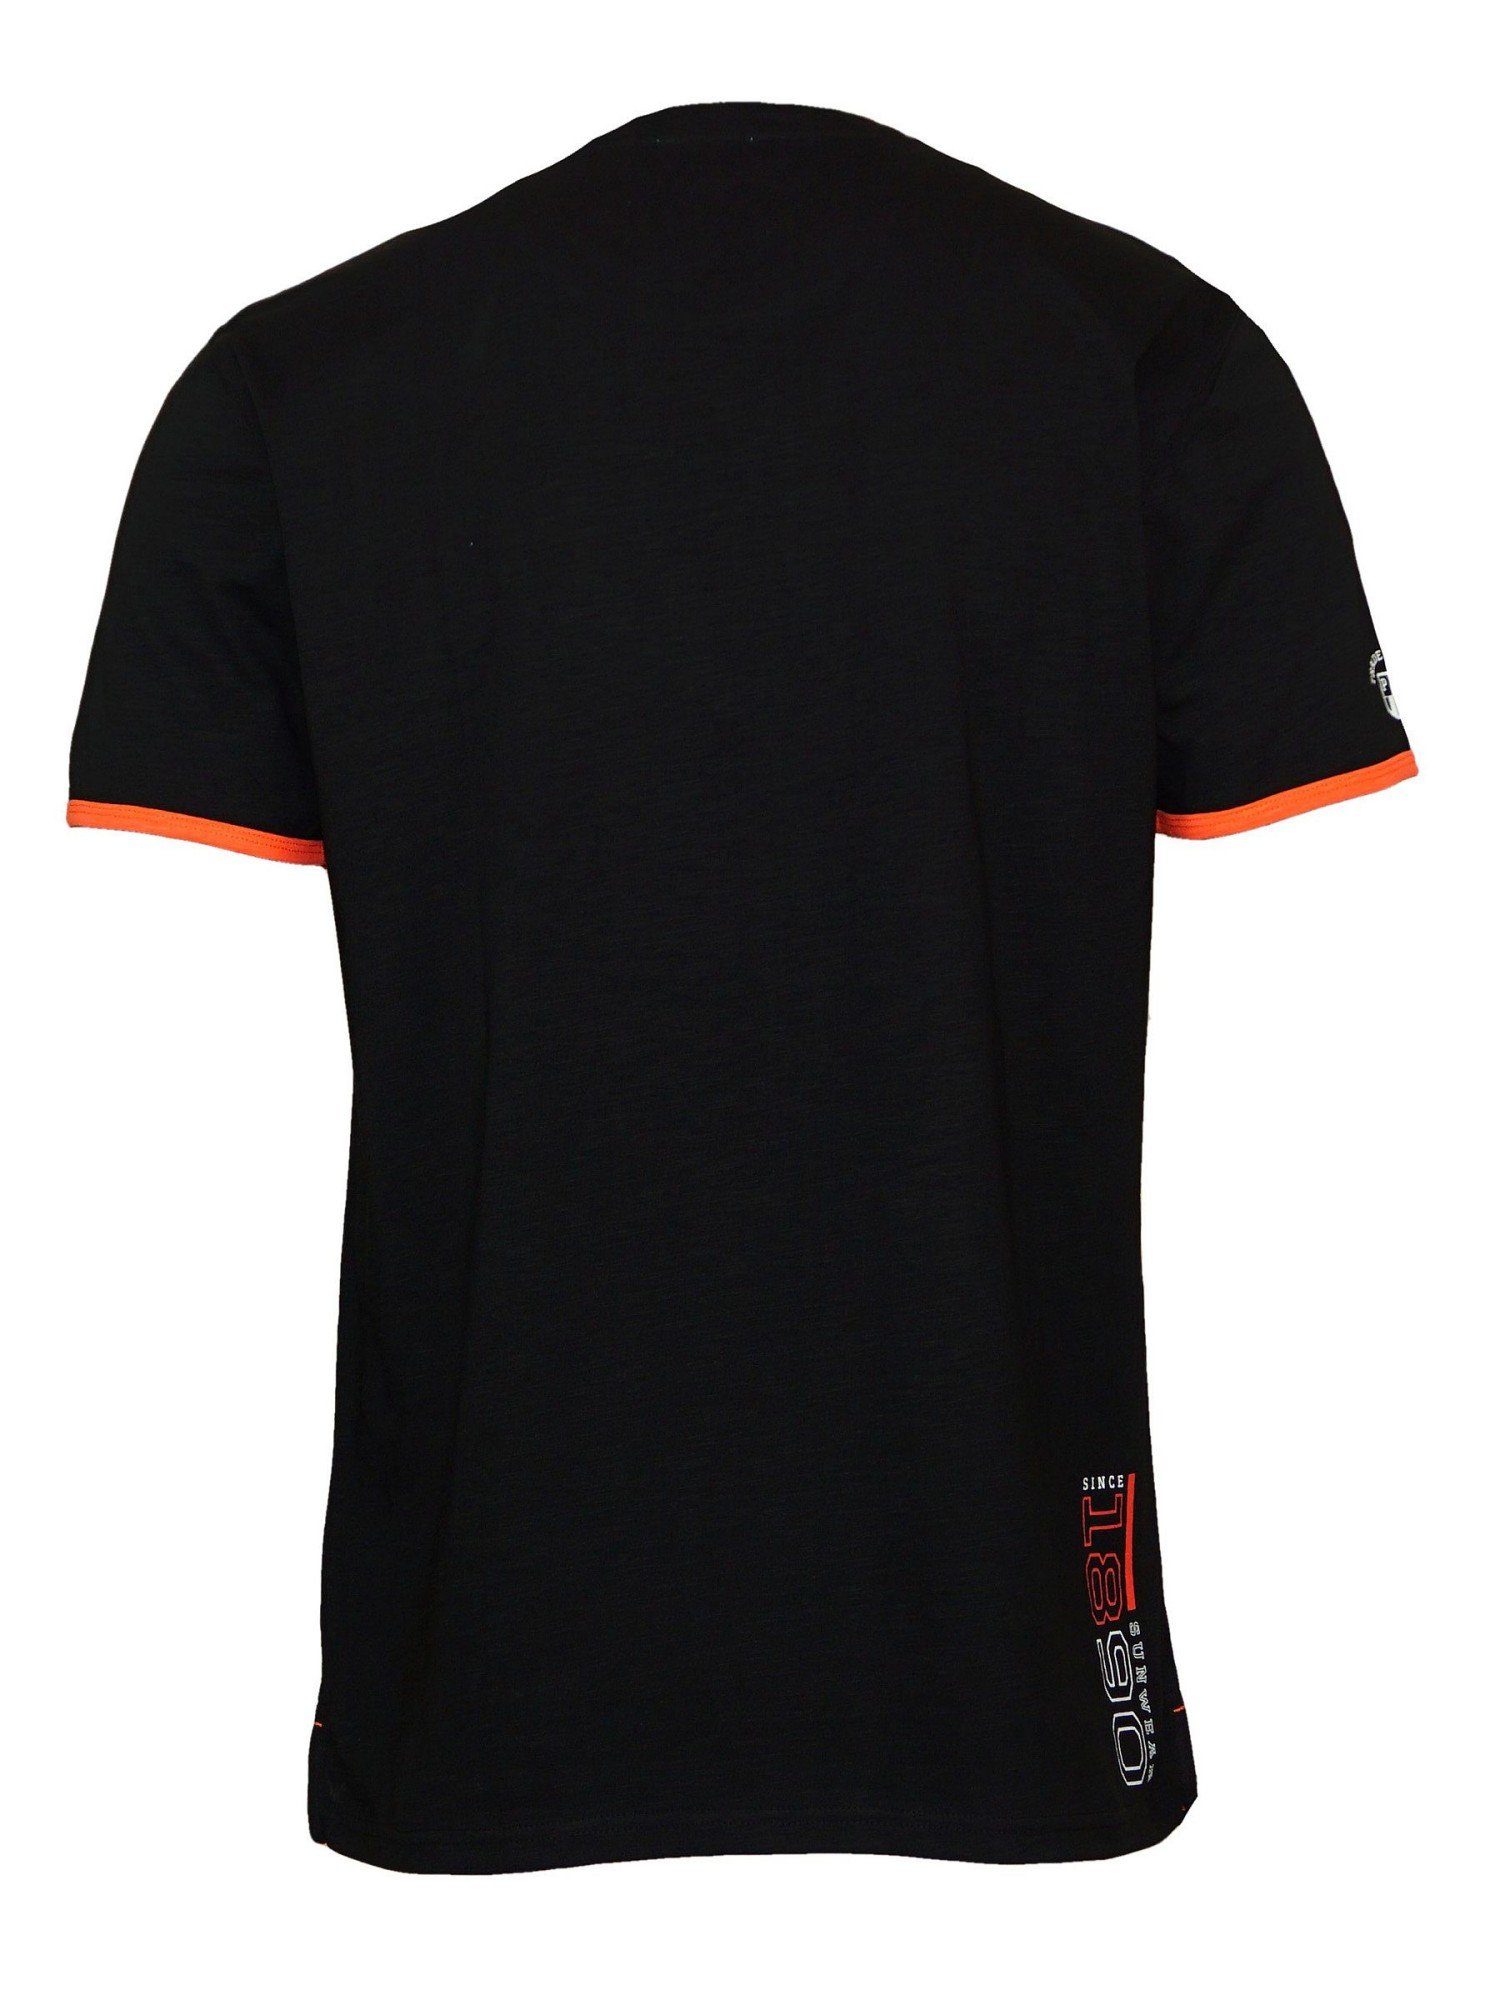 U.S. Polo Assn T-Shirt Shirt T-Shirt Emer schwarz